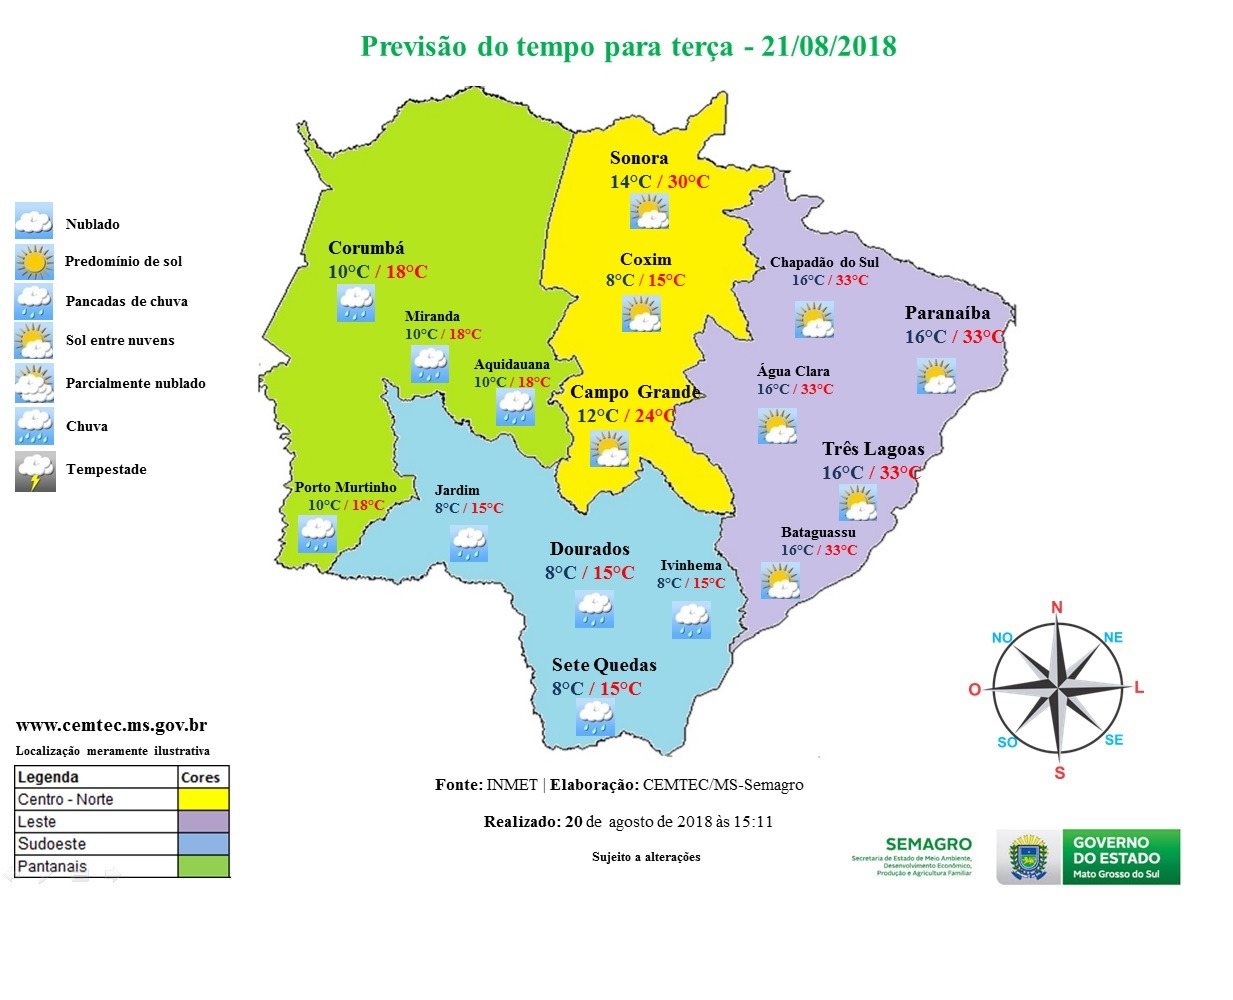 Estado de Mato Grosso do Sul terá frio e chuva isolada nesta terça-feira